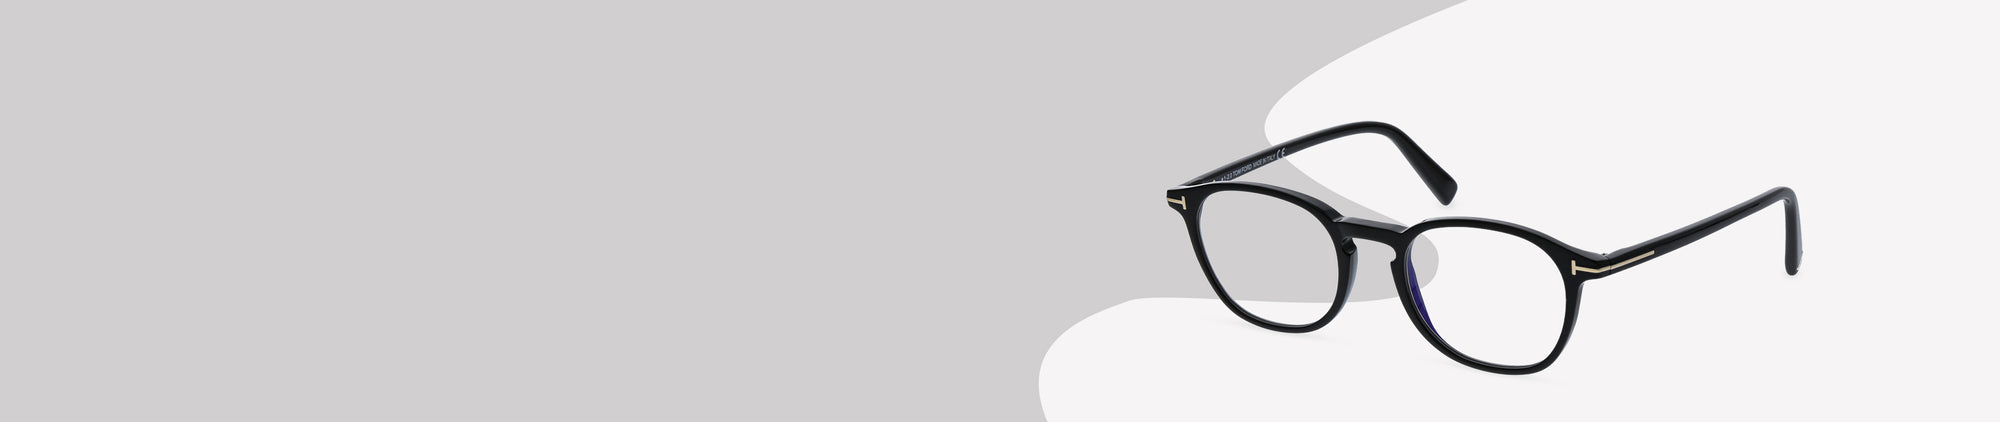 Frame Colour: Black Glasses